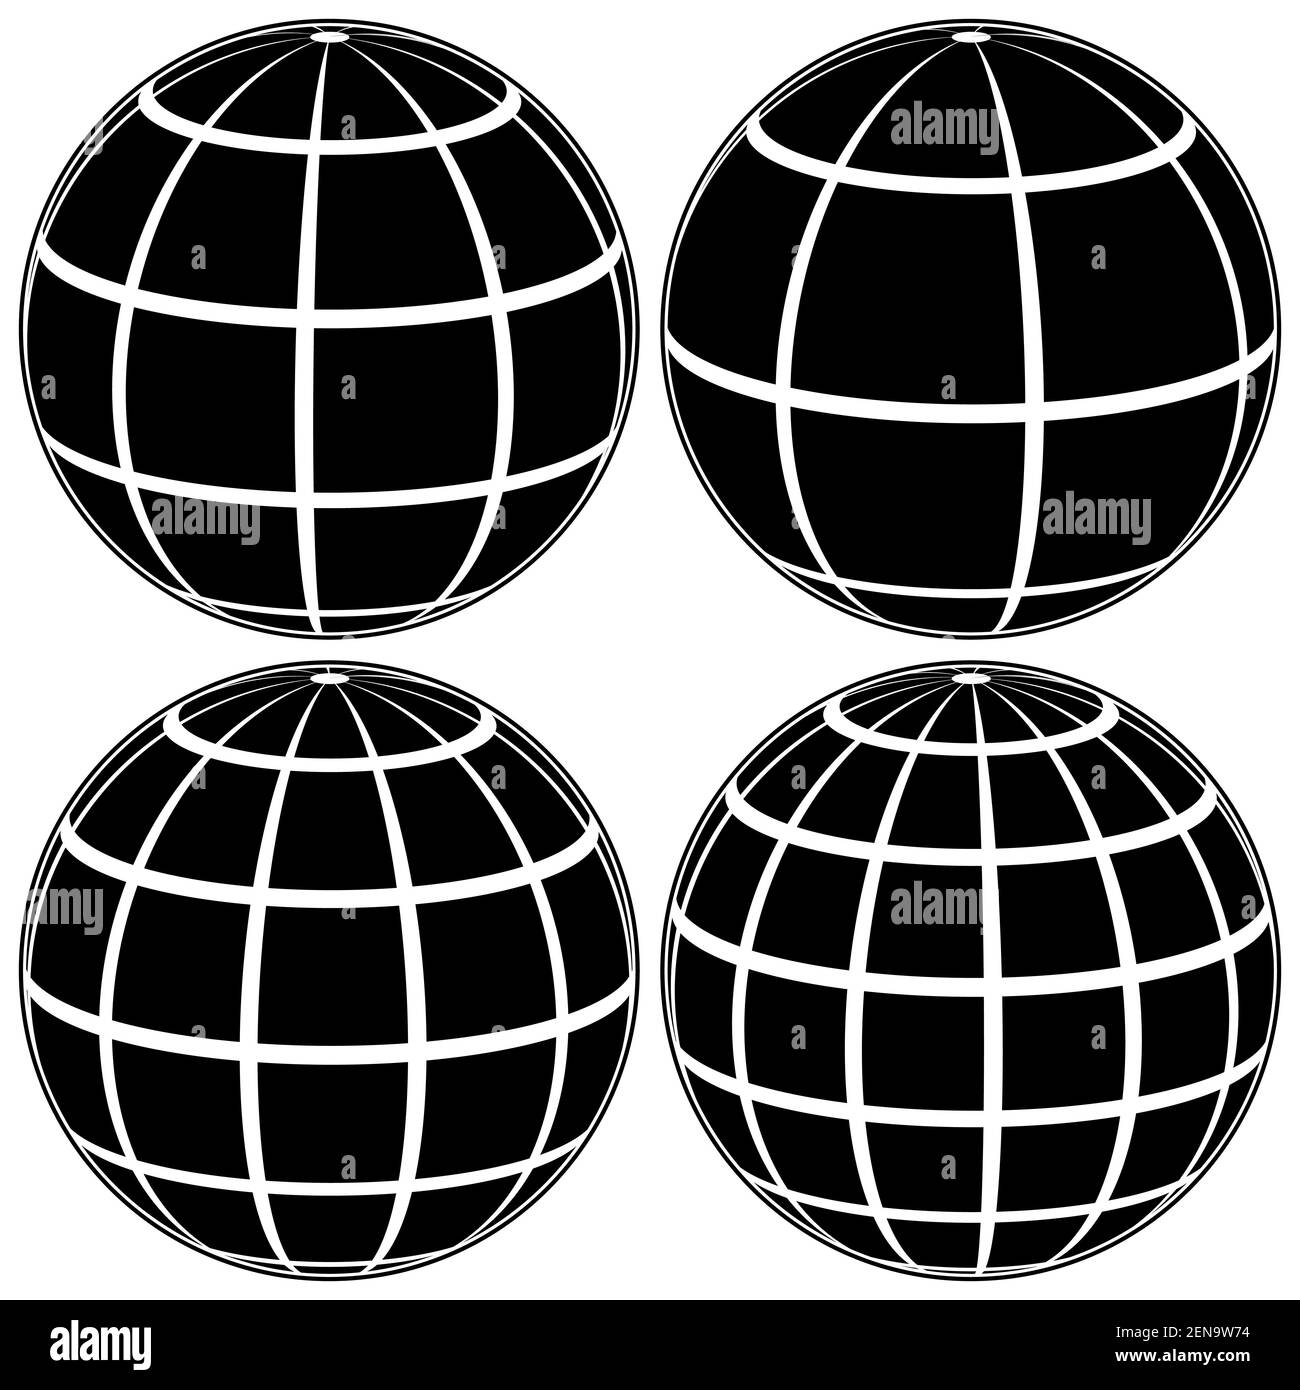 Impostare il modello 3D del globo nero della Terra o del pianeta, il modello della sfera celeste con griglia di coordinate, il campo vettoriale con strisce e linee Illustrazione Vettoriale